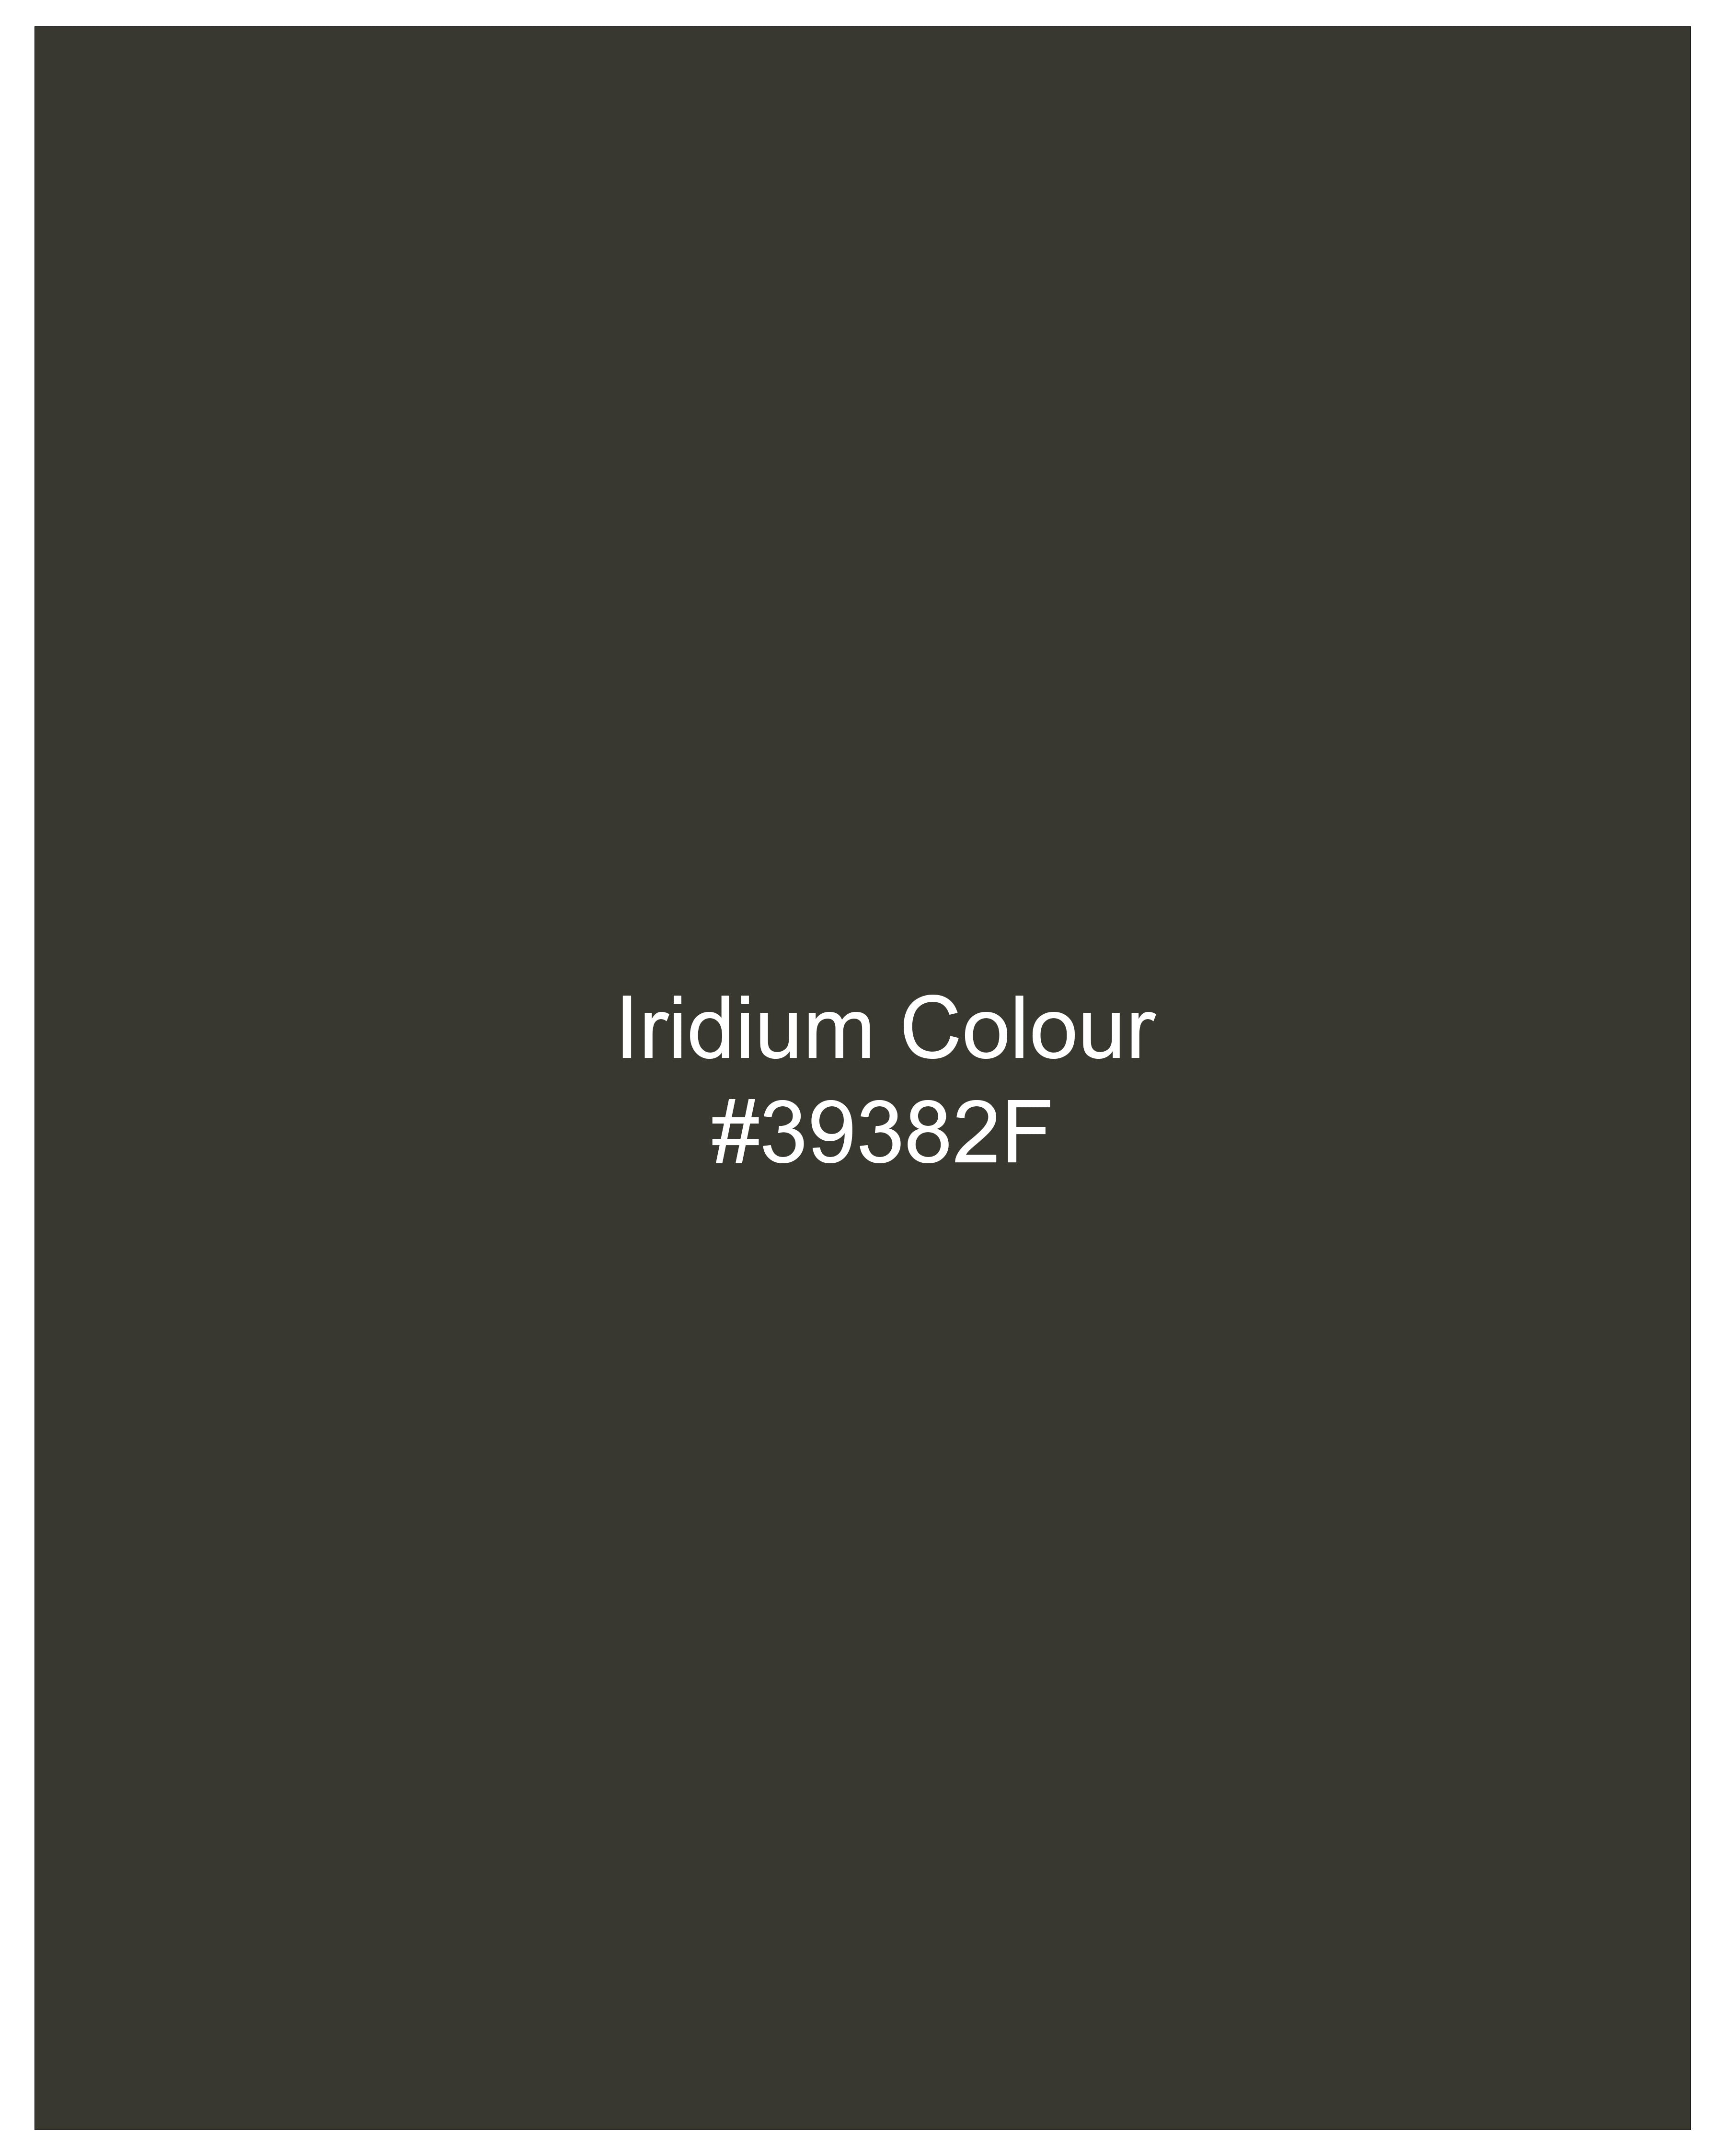 Iridium Green Waistcoat V2707-36, V2707-38, V2707-40, V2707-42, V2707-44, V2707-46, V2707-48, V2707-50, V2707-52, V2707-54, V2707-56, V2707-58, V2707-60